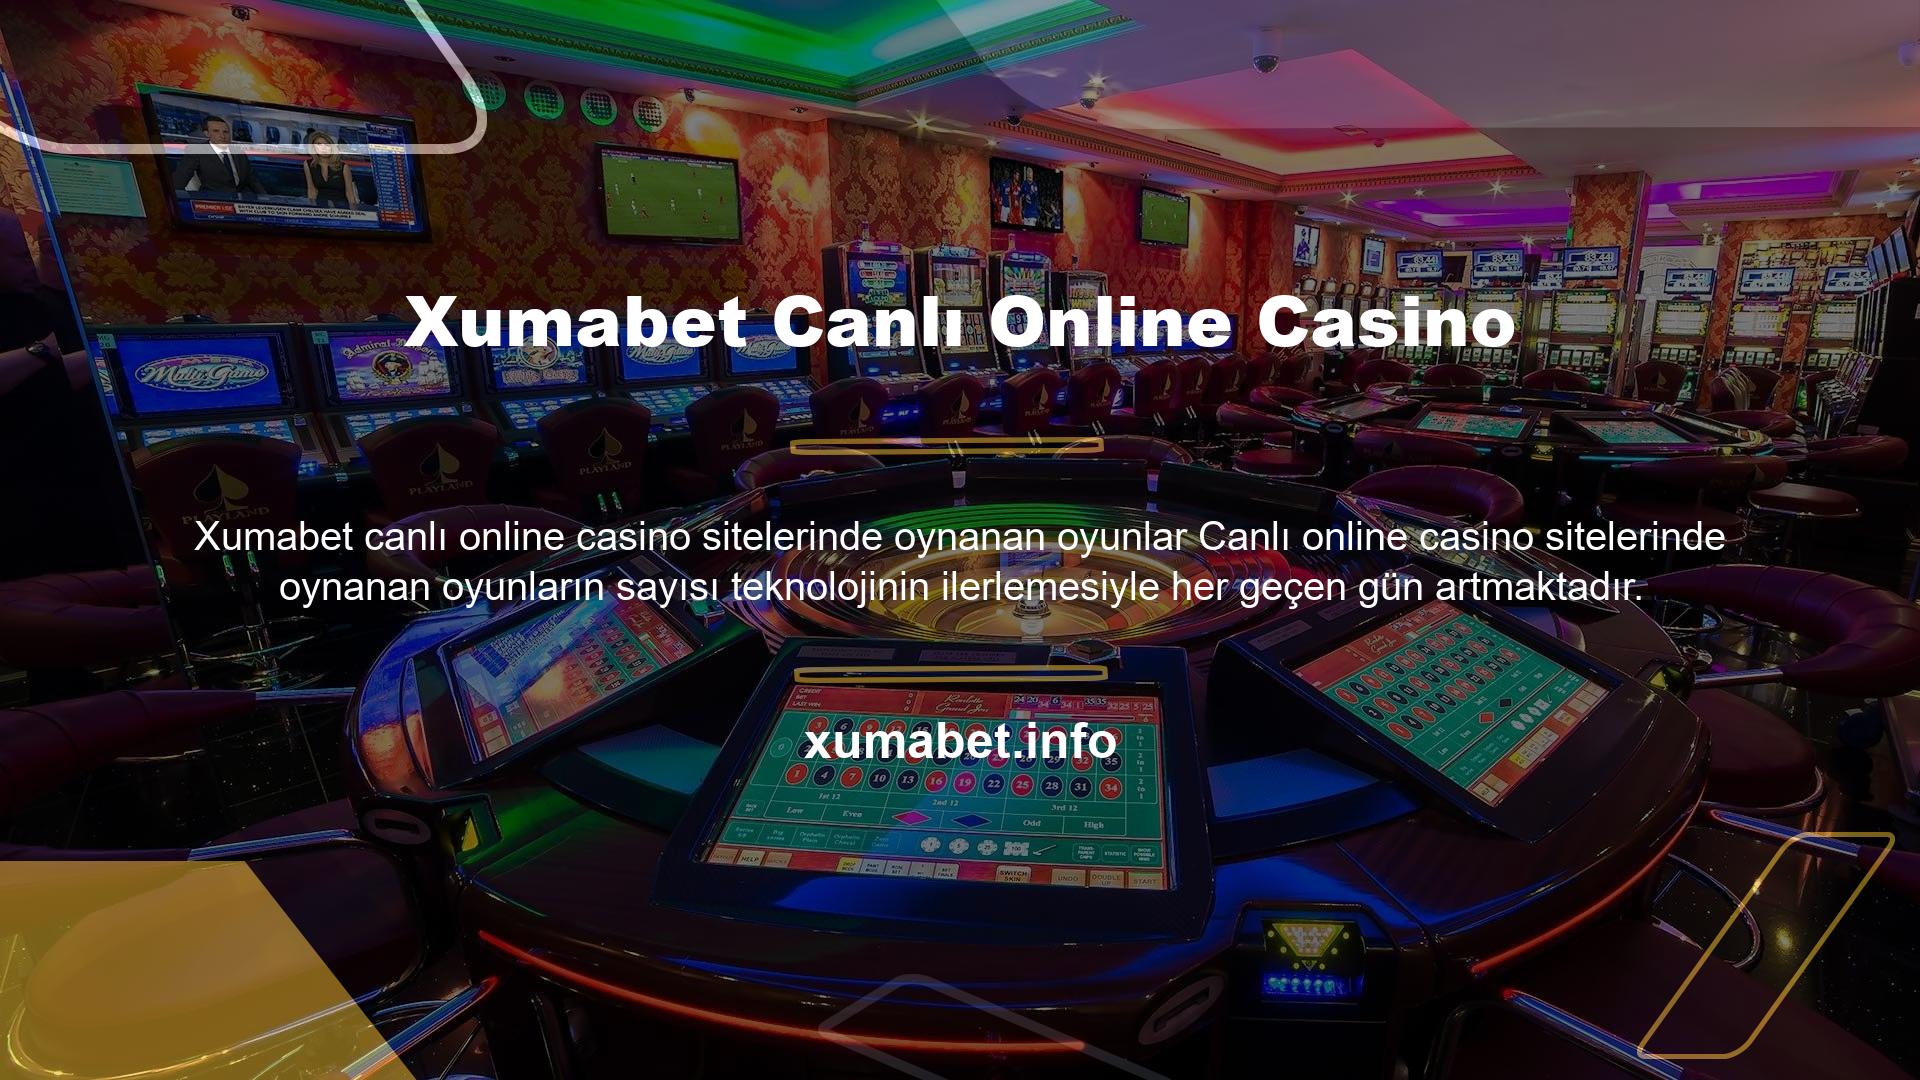 Canlı casino sitelerinde oynanan oyunlara erişmek için bu sitelerden birine üyelik yeterlidir